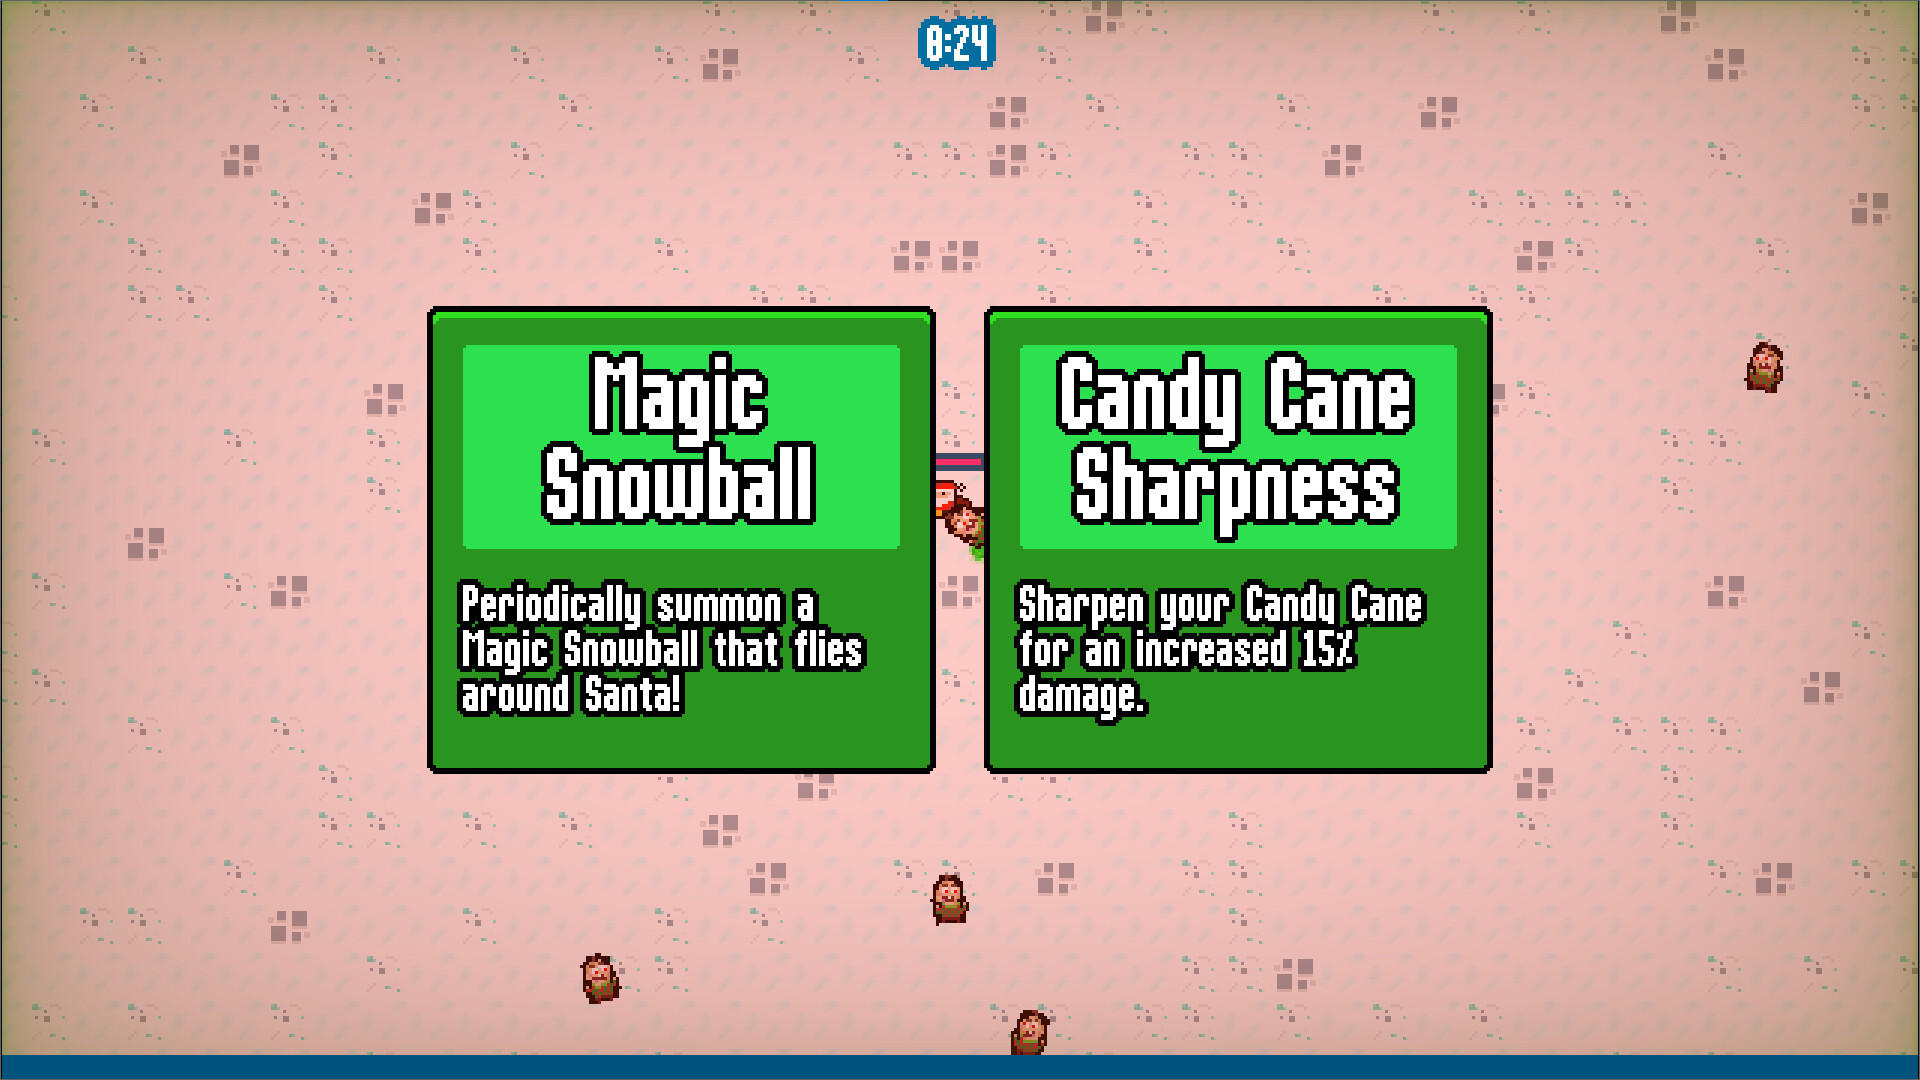 A Christmassy Christmas screenshot game